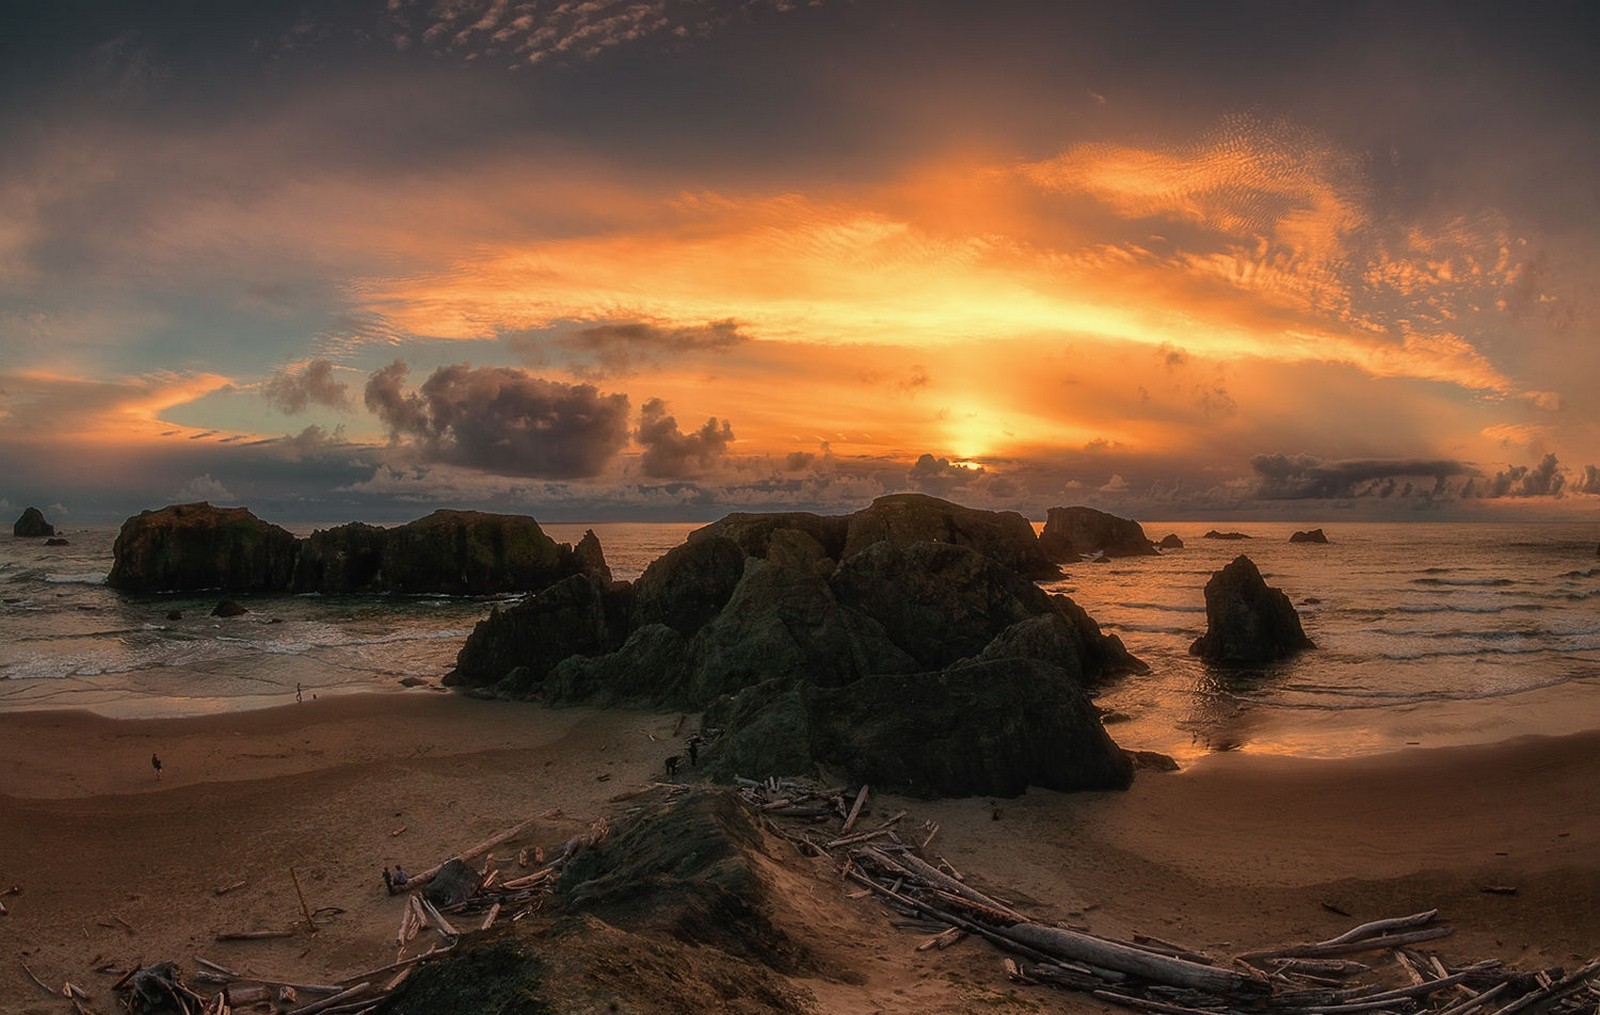 General 1600x1015 nature landscape beach sunset rocks sea sand sky sunlight clouds Oregon USA orange sky